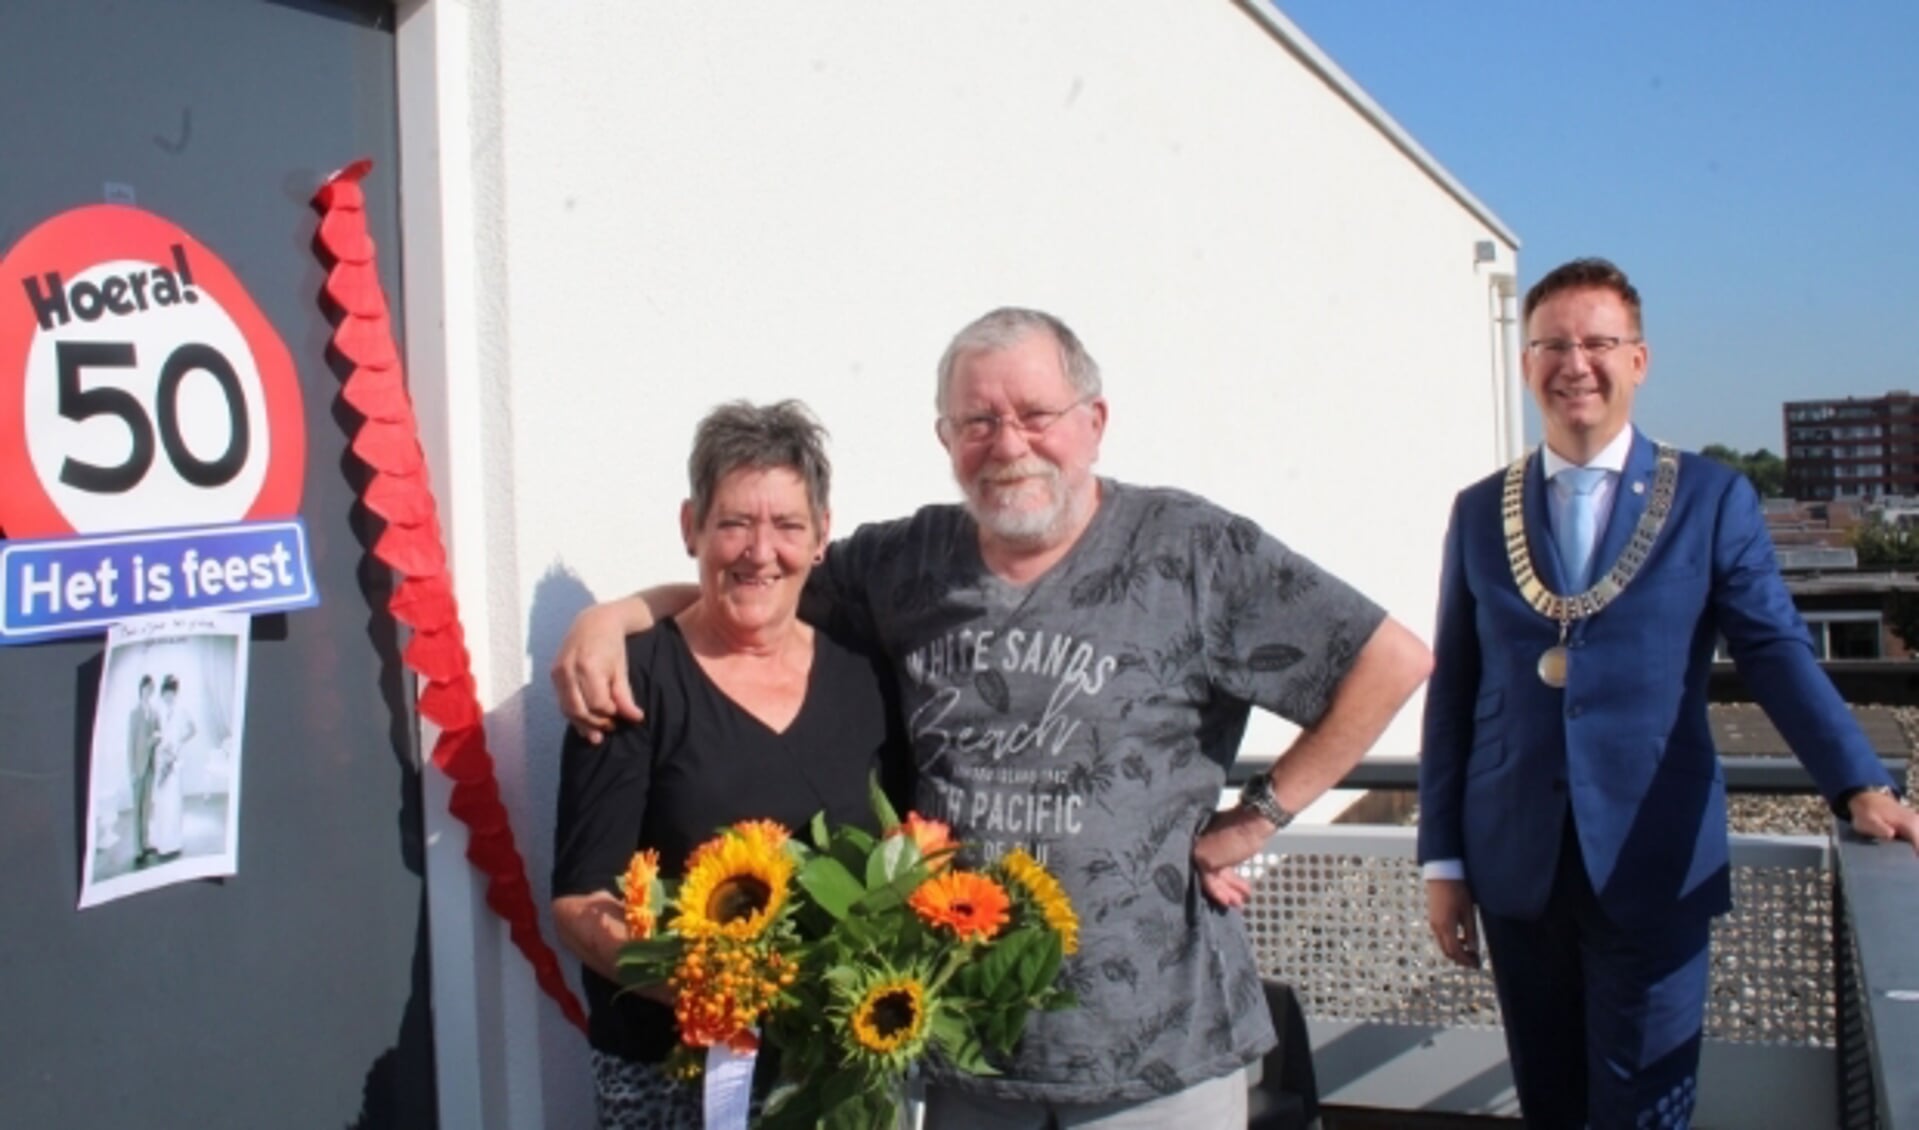 Op een stralende woensdag 2 september vierden Joke en Bert Vergeer hun gouden huwelijksdag, met een onverwacht bezoek van burgemeester Van Domburg. Coronaveilig uiteraard. (Foto: Lysette Verwegen)